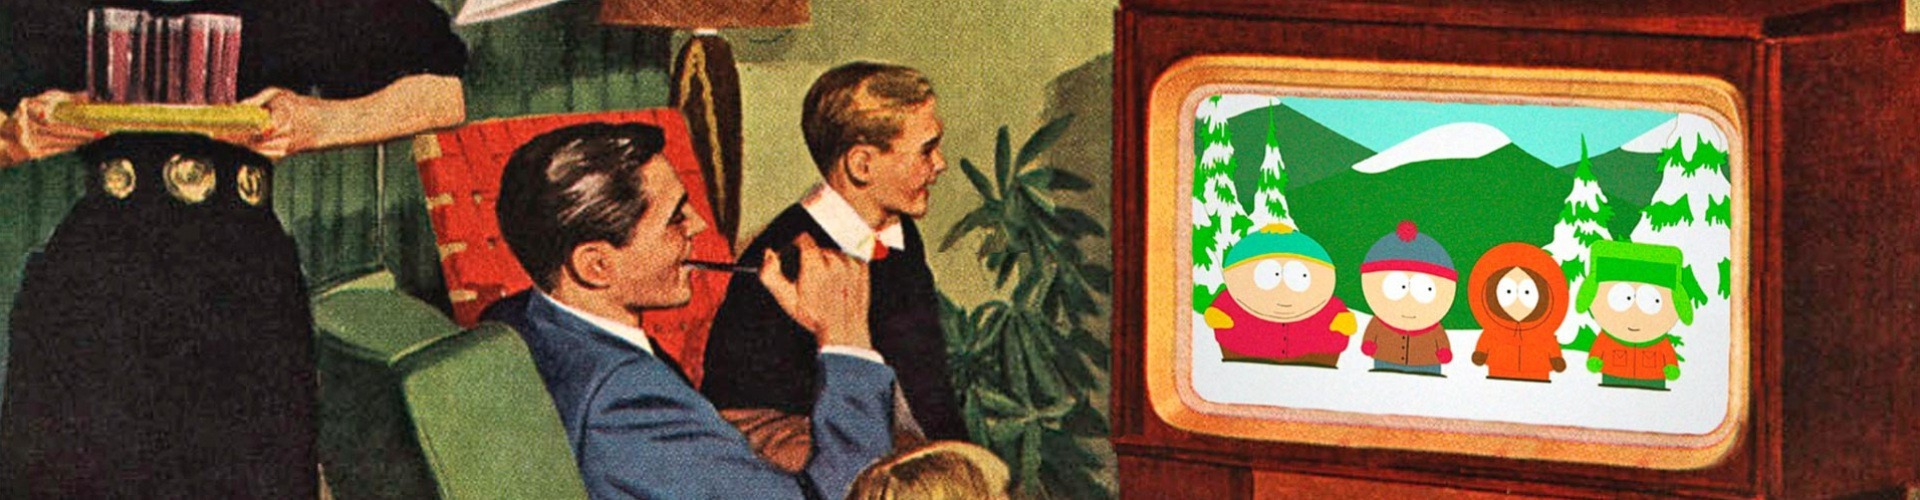 Kábel a rengetegben: visszasírjuk a tévézést?